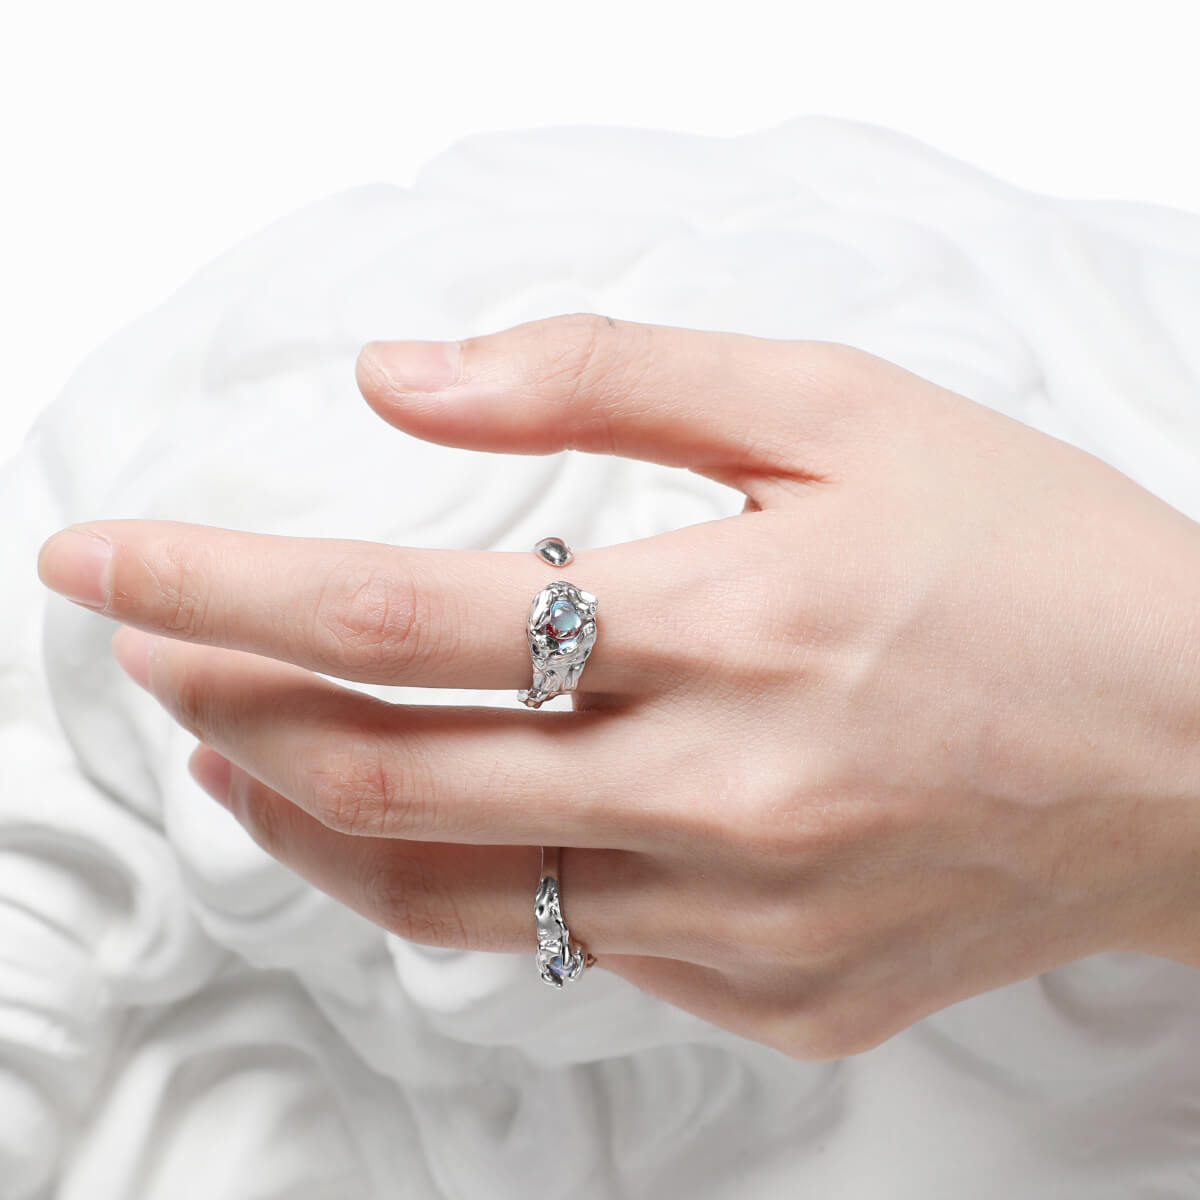 Moonstone Silver Ring Genderless Ring | Buy at Khanie